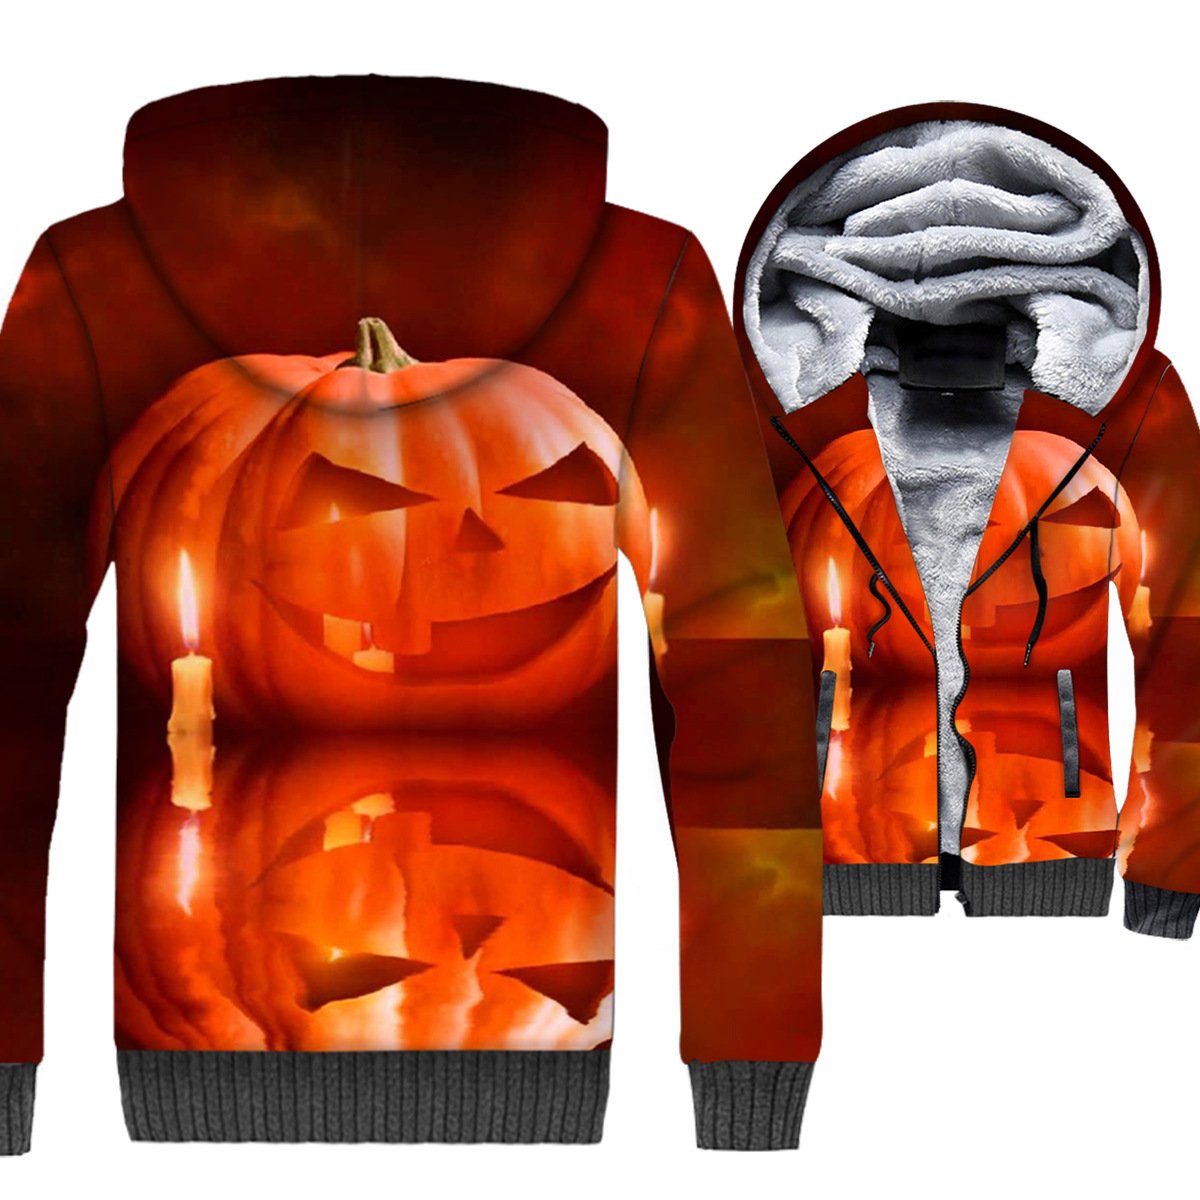 Nightmare Before Christmas Jackets - Nightmare Before Christmas Series Pumpkin Lantern Red 3D Fleece Jacket